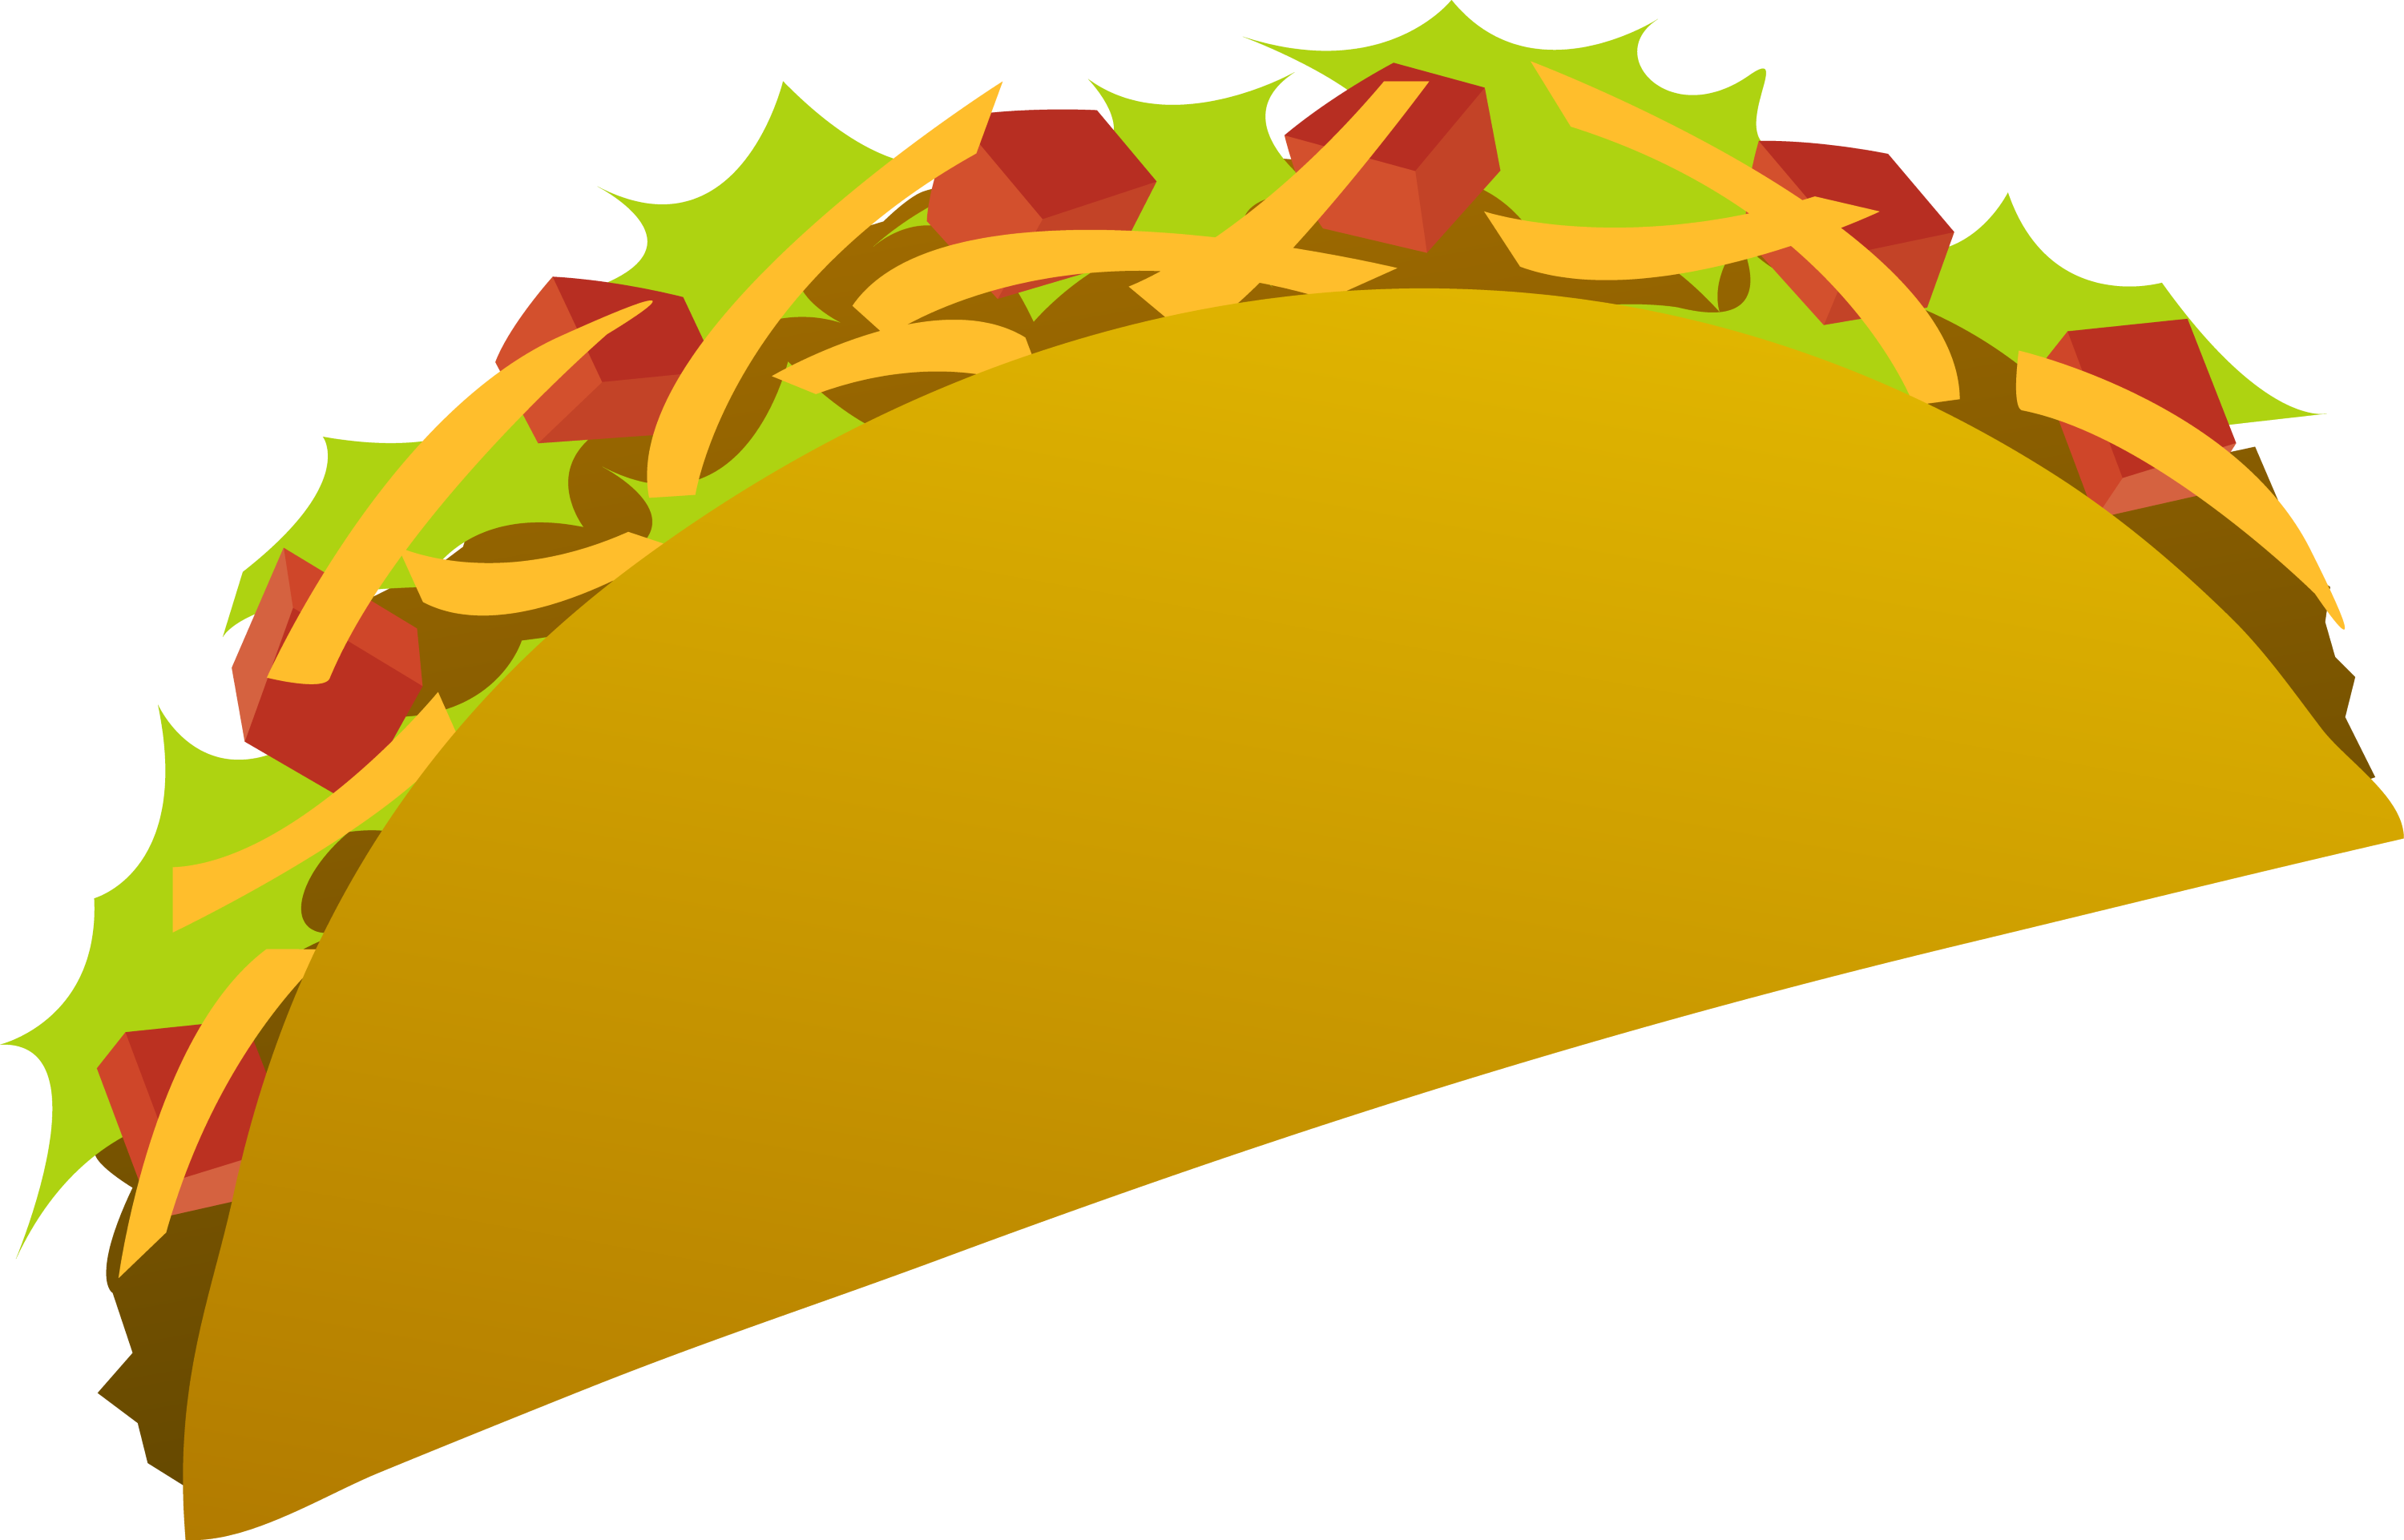 Vector Art of a Taco - Free Clip Art